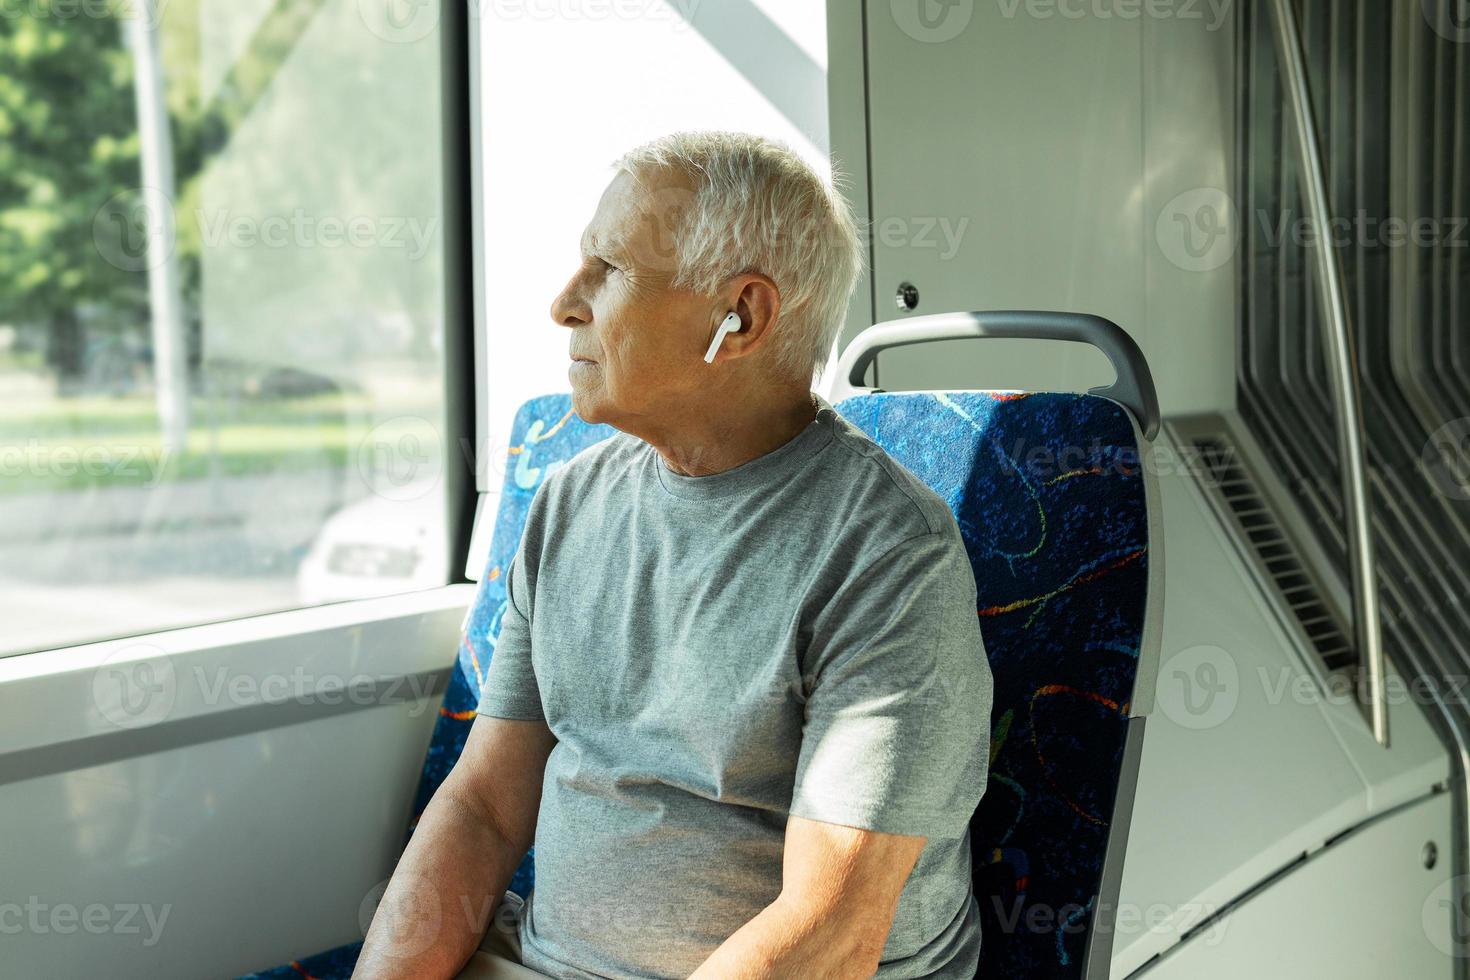 älterer mann benutzt drahtlose ohrhörer während der fahrt in öffentlichen verkehrsmitteln foto